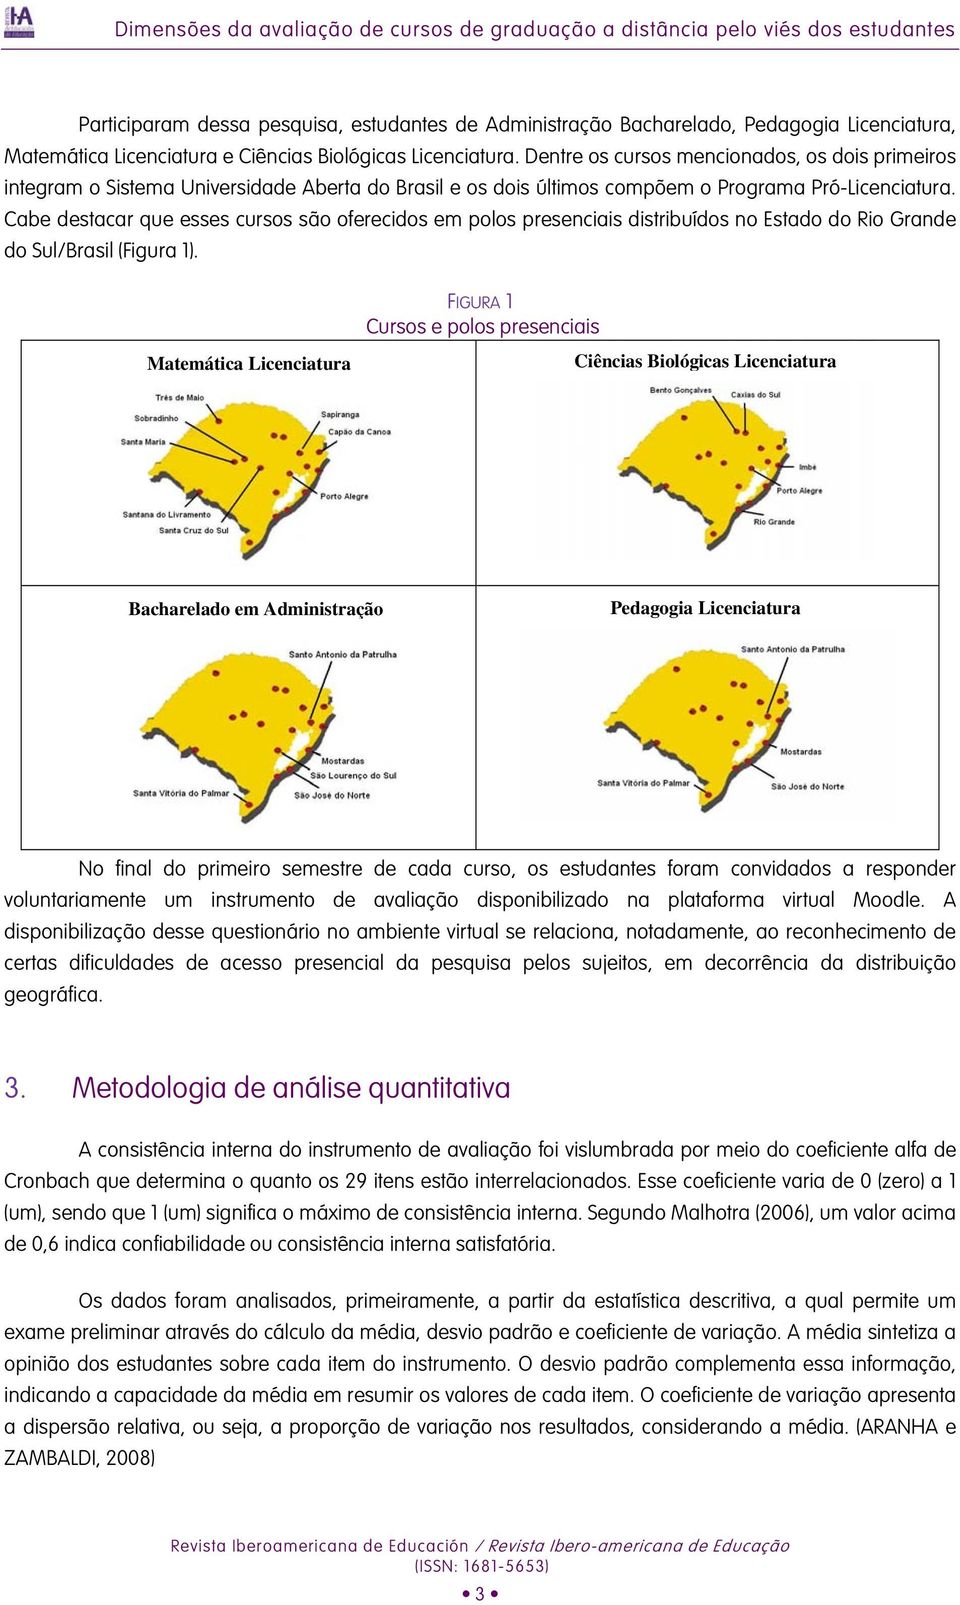 Cabe destacar que esses cursos são oferecidos em polos presenciais distribuídos no Estado do Rio Grande do Sul/Brasil (Figura 1).